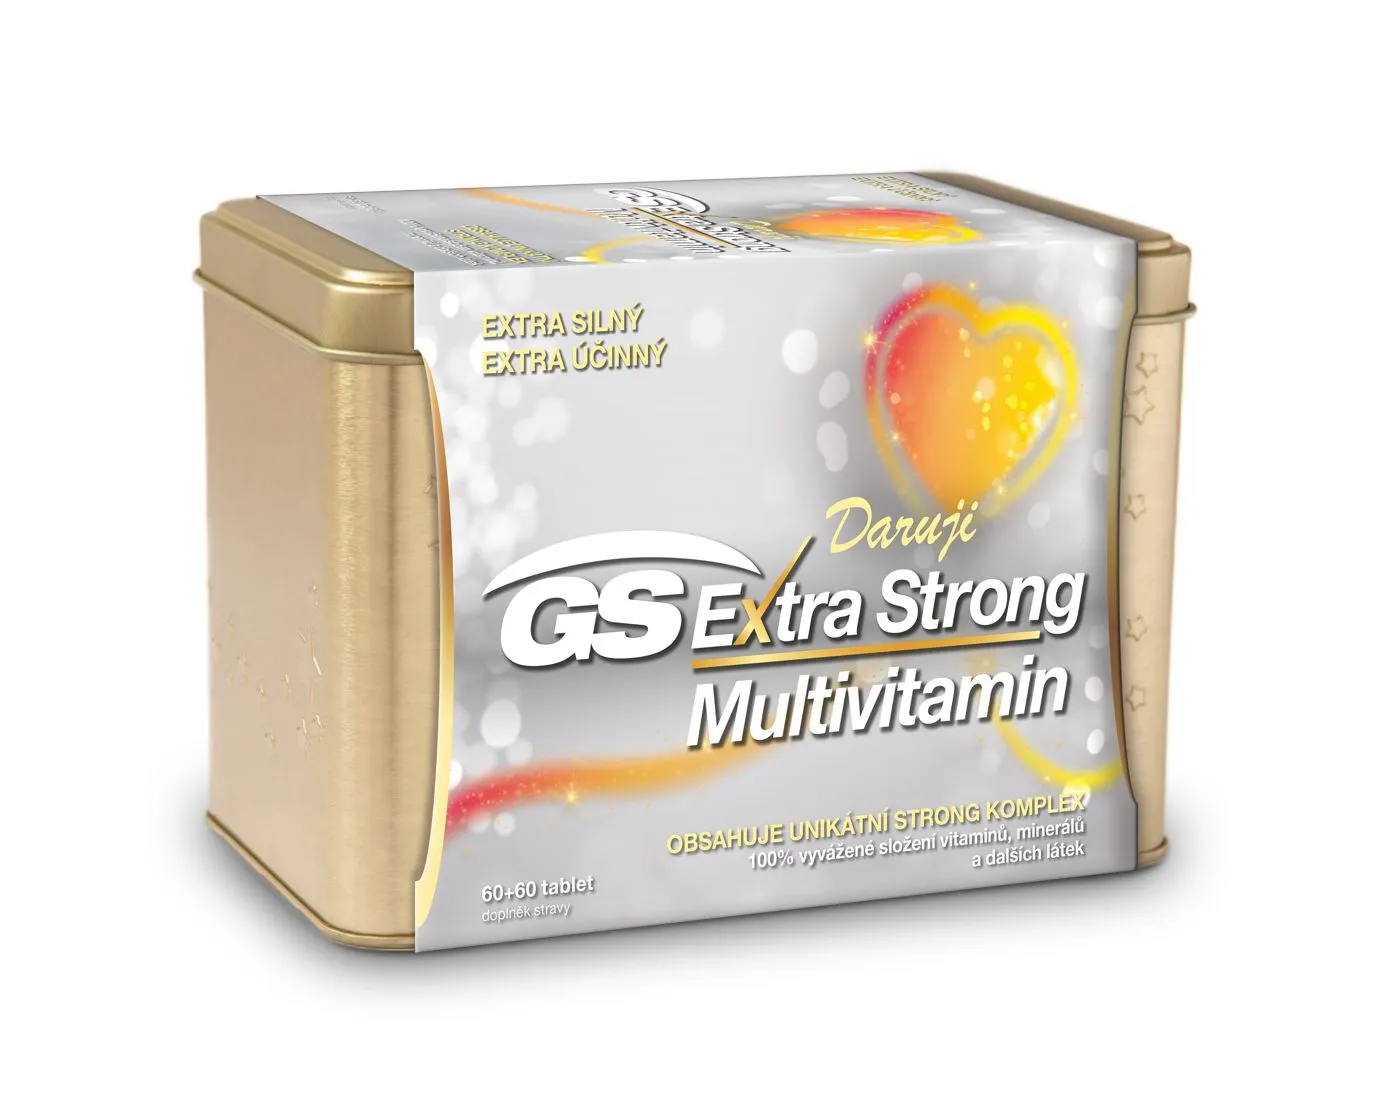 GS Extra Strong Multivitamin dárkové balení 60+60 tablet